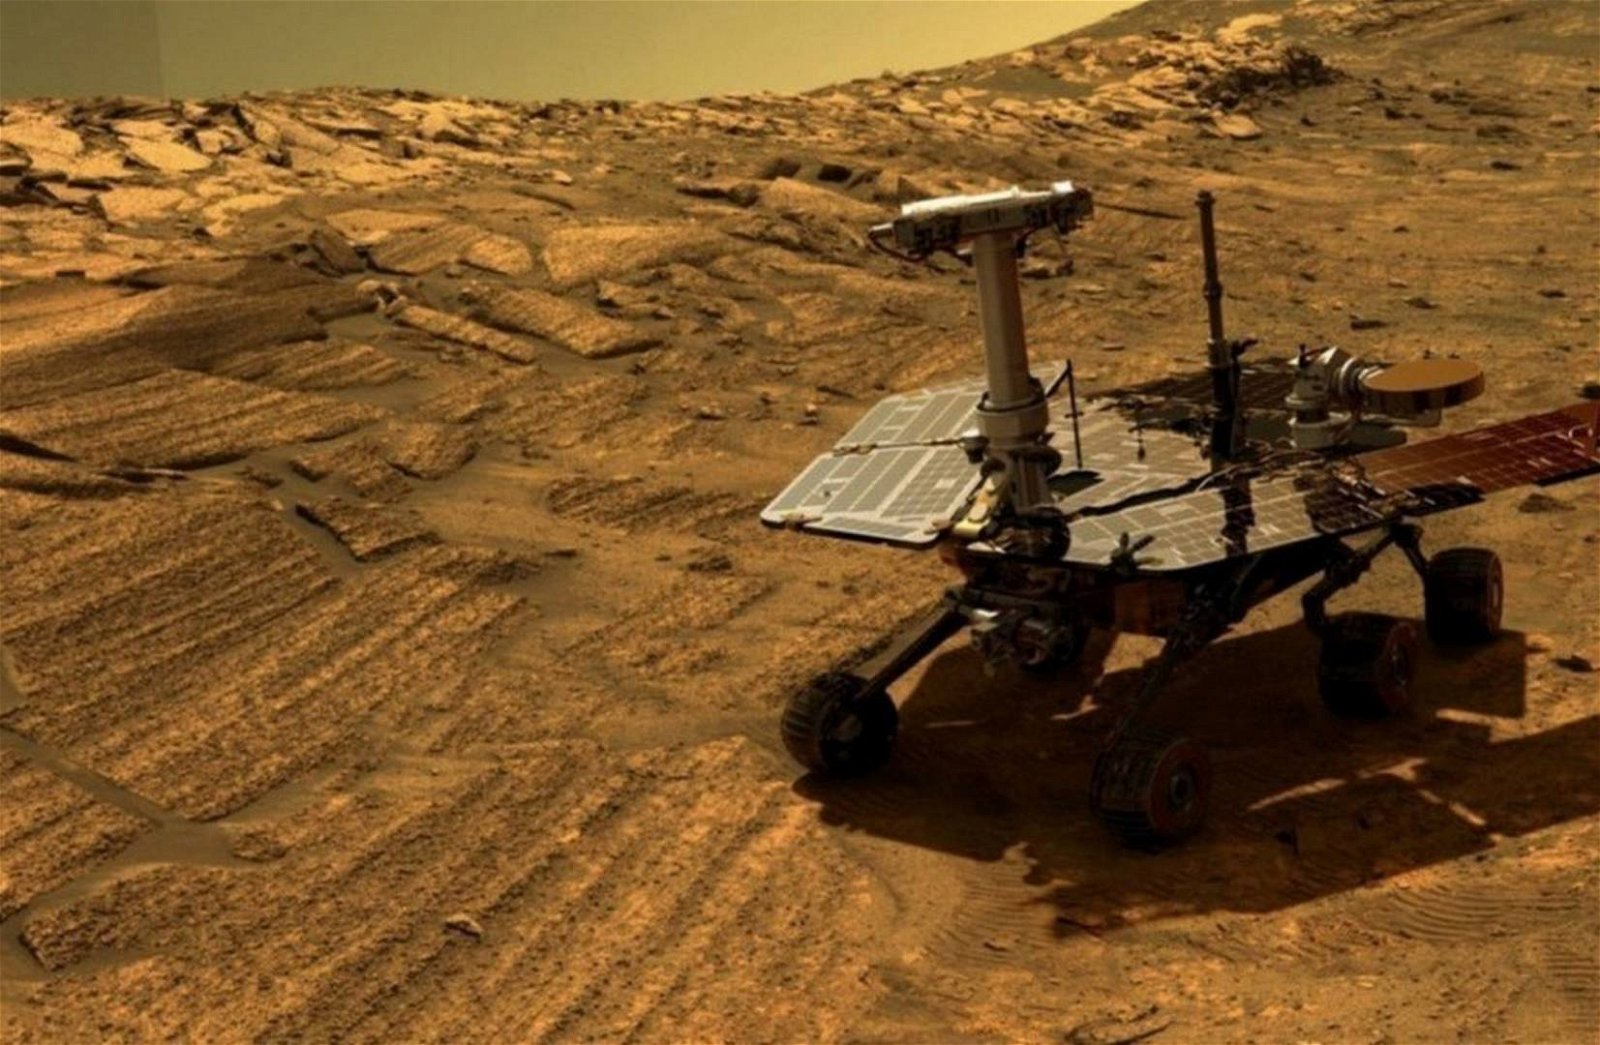 Immagine di La NASA dichiara morto il rover Opportunity, è stata una missione sensazionale